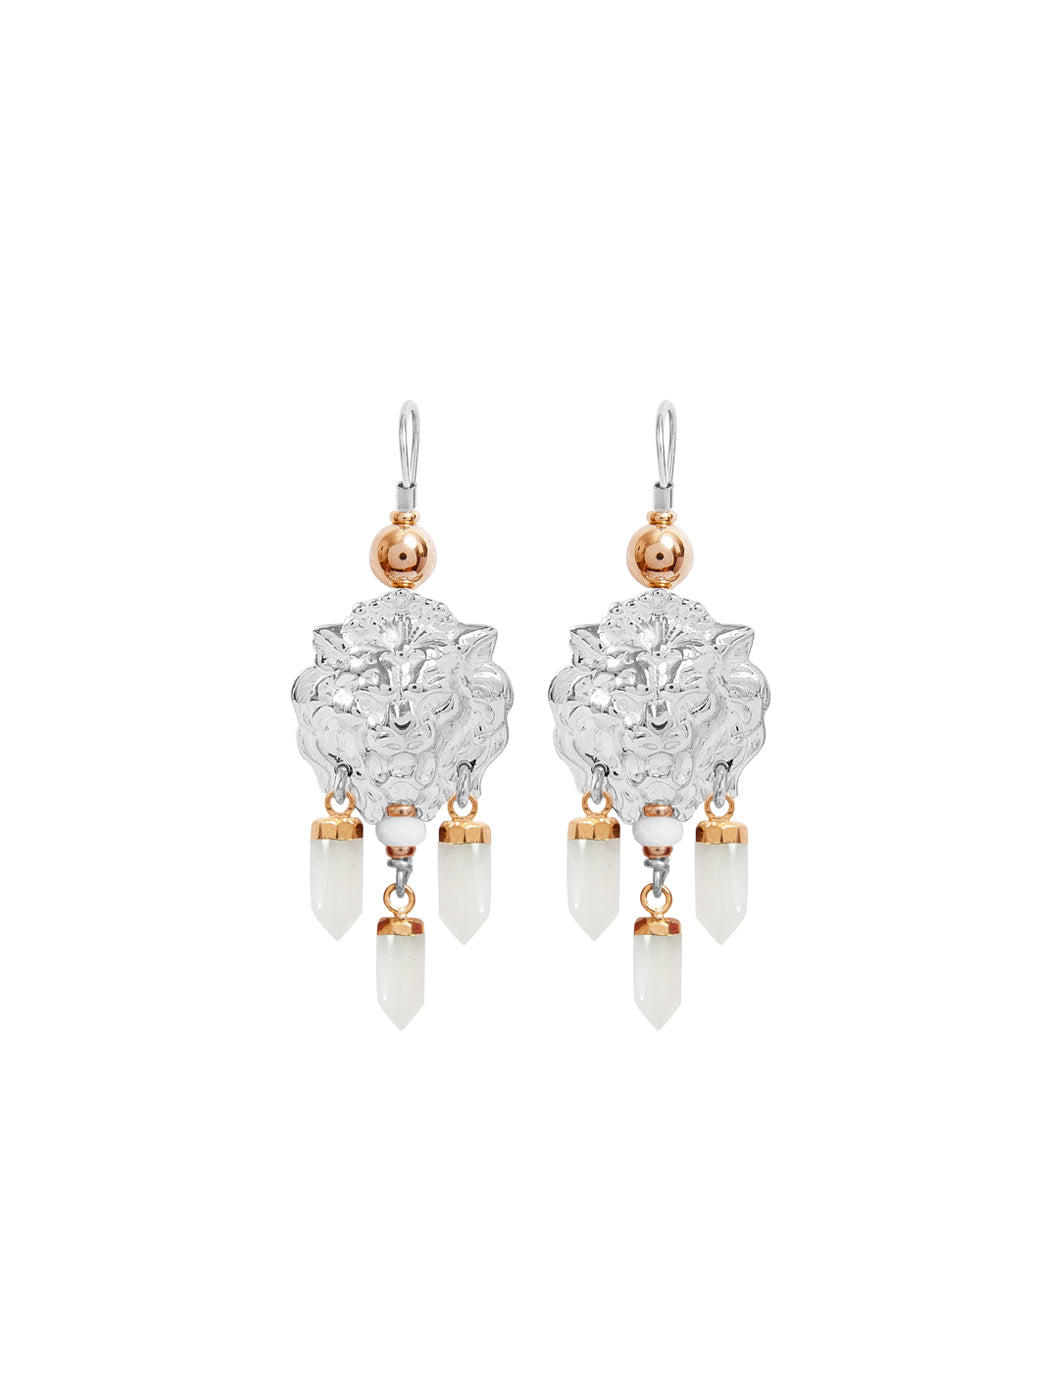 Fiorina Jewellery Taormina Earrings White Quartz